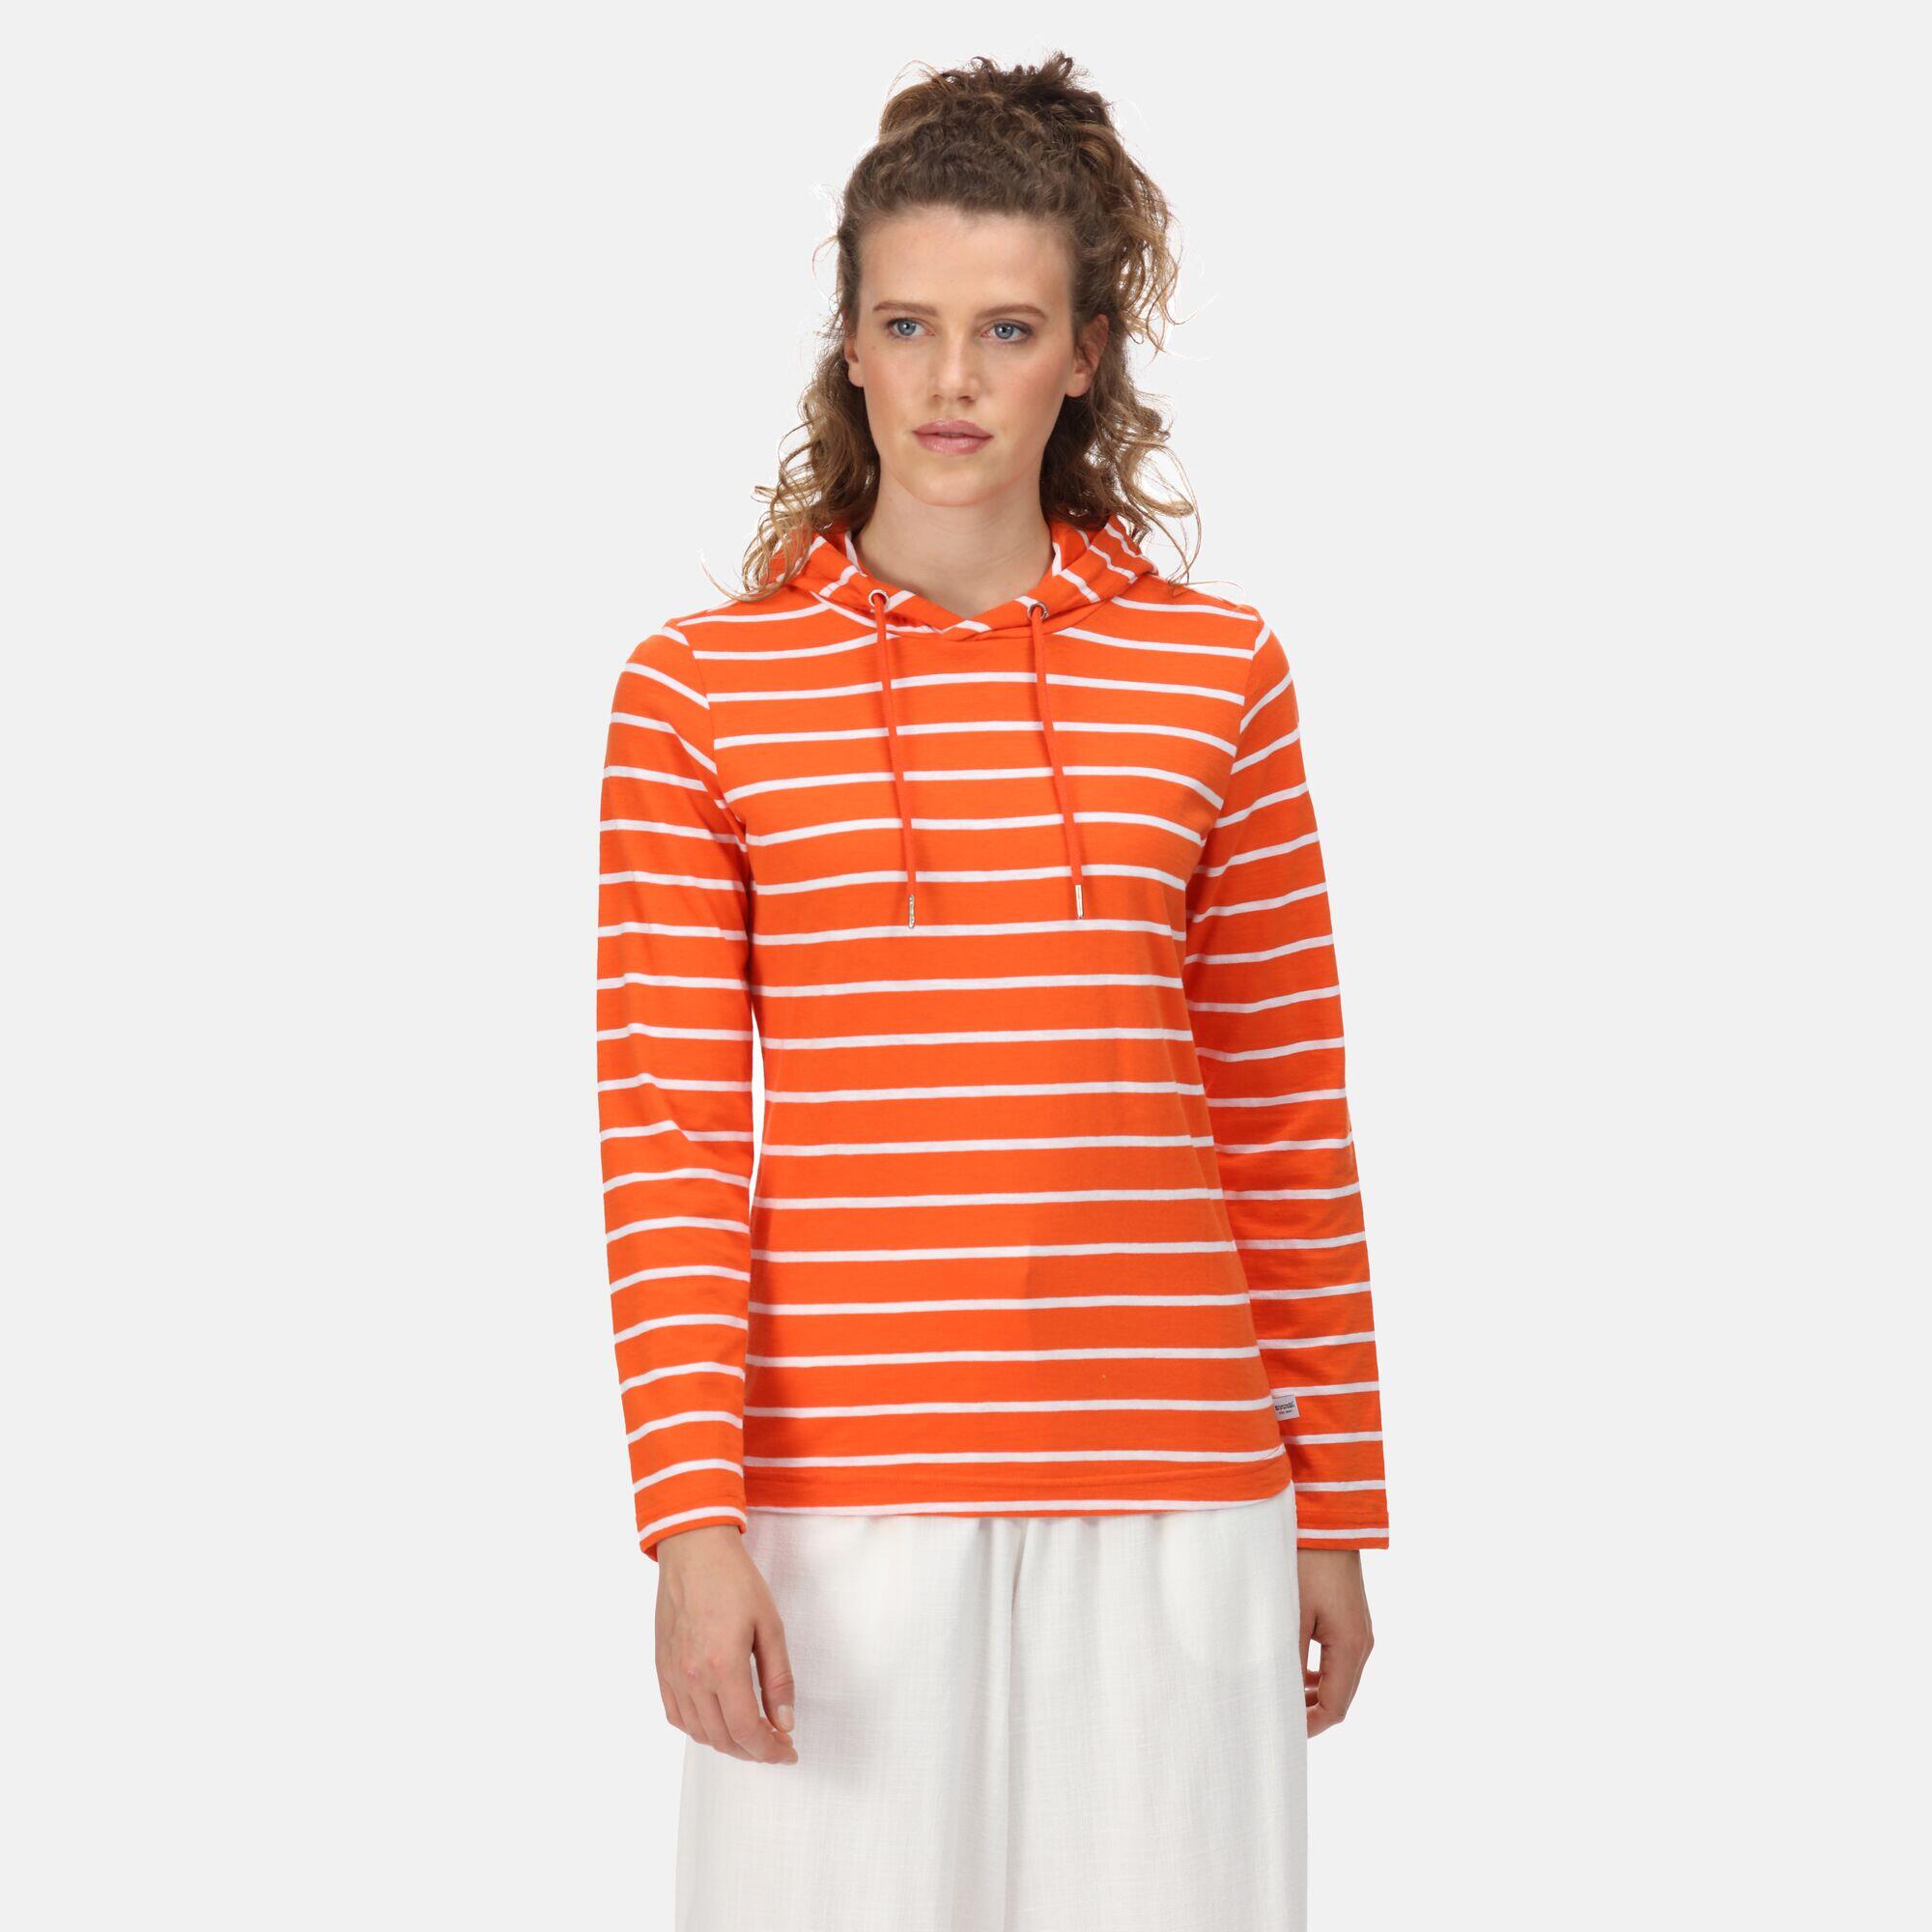 Maelys Women's Walking Long Sleeve T-Shirt - Orange Crayon 5/5